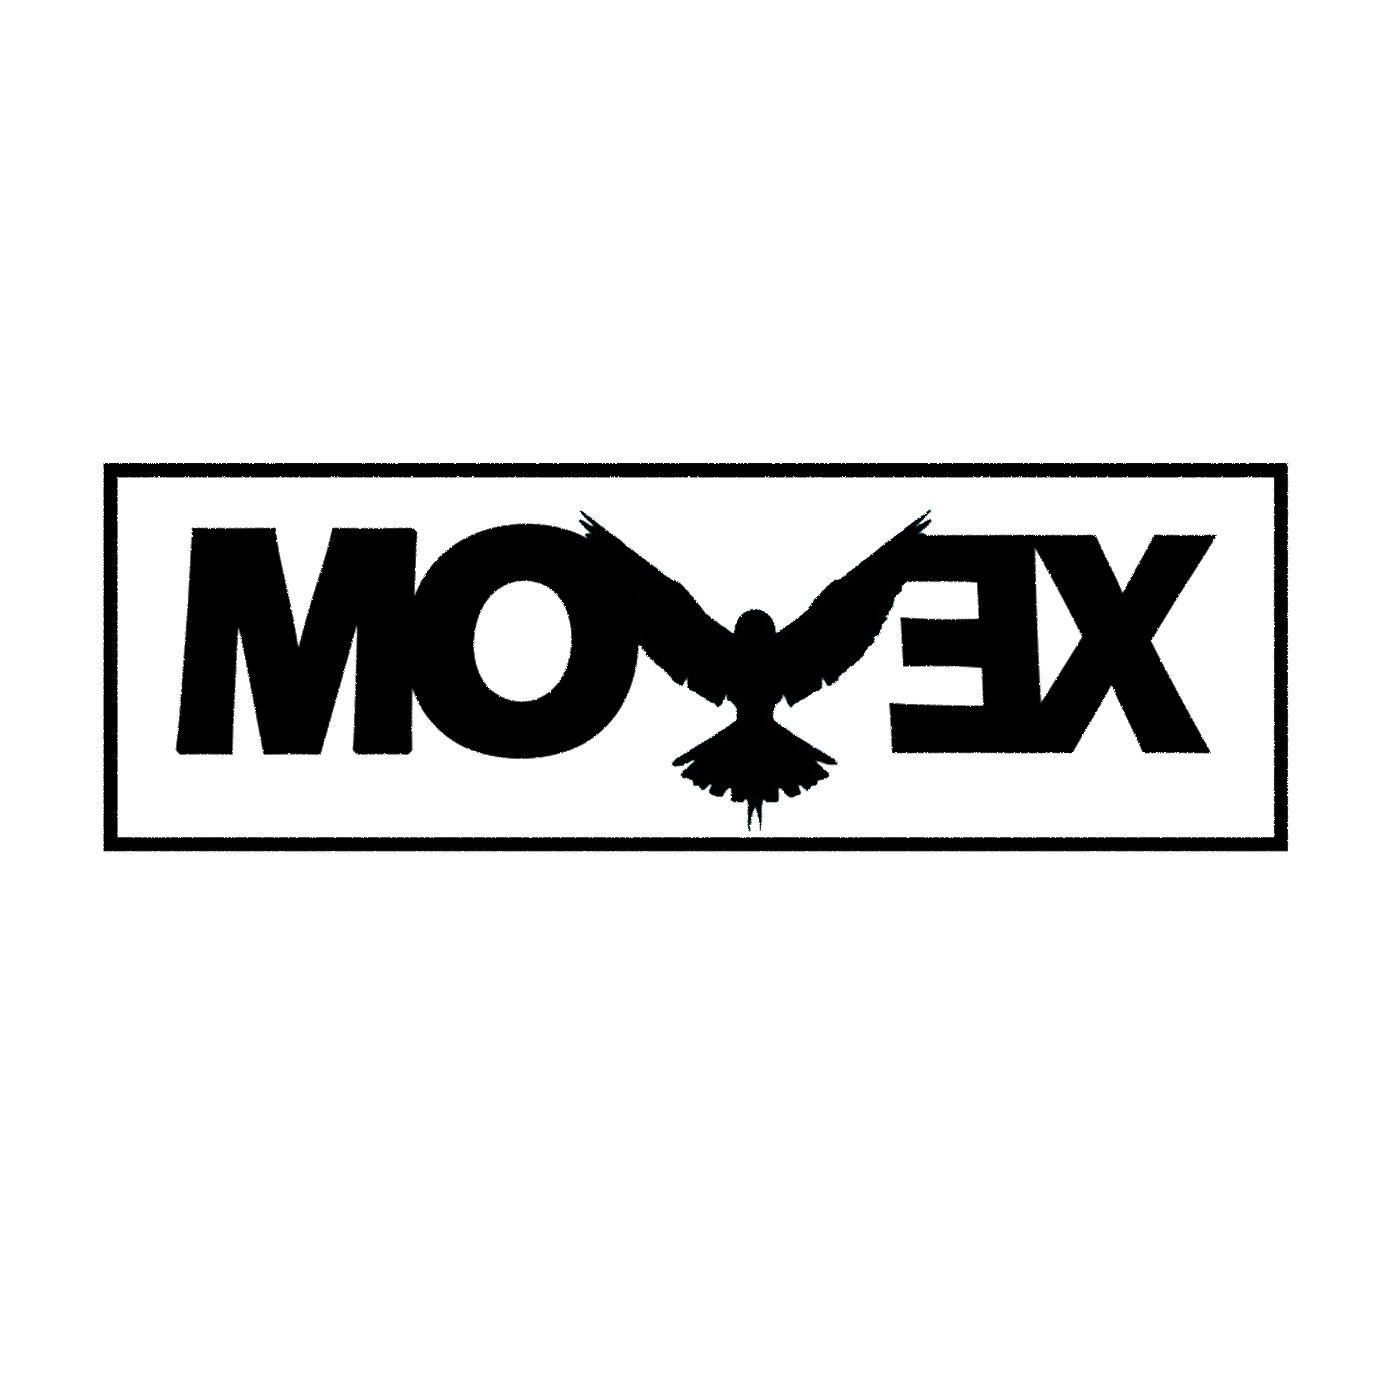 Dj Movex